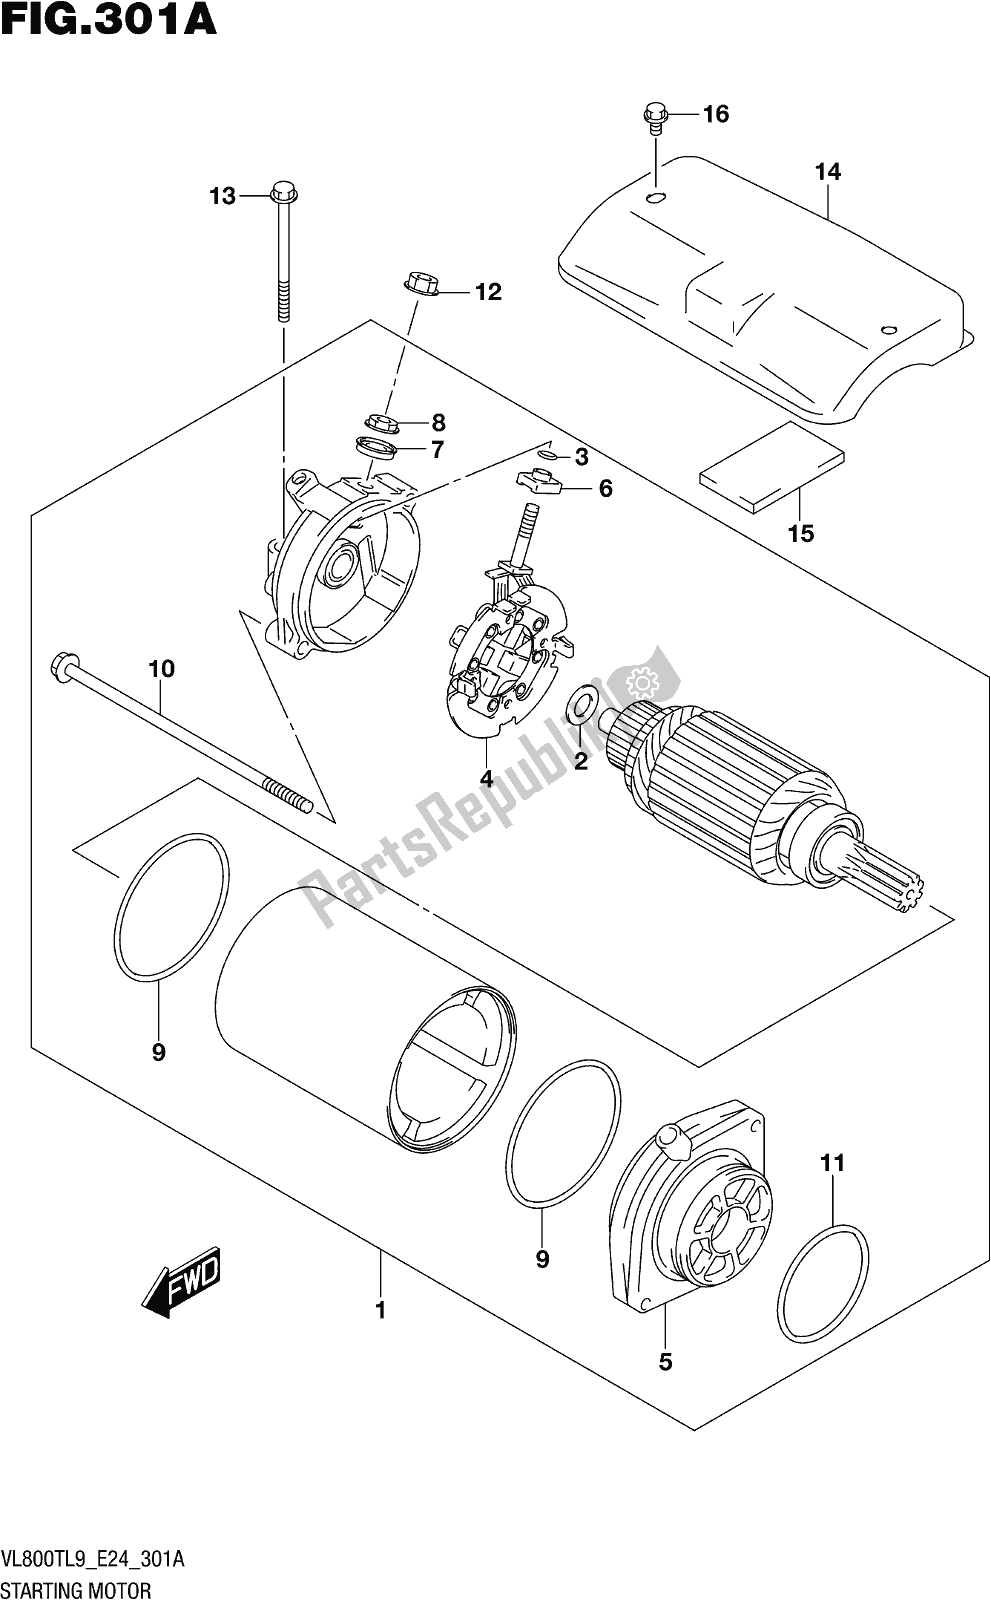 Alle onderdelen voor de Fig. 301a Starting Motor van de Suzuki VL 800T 2019